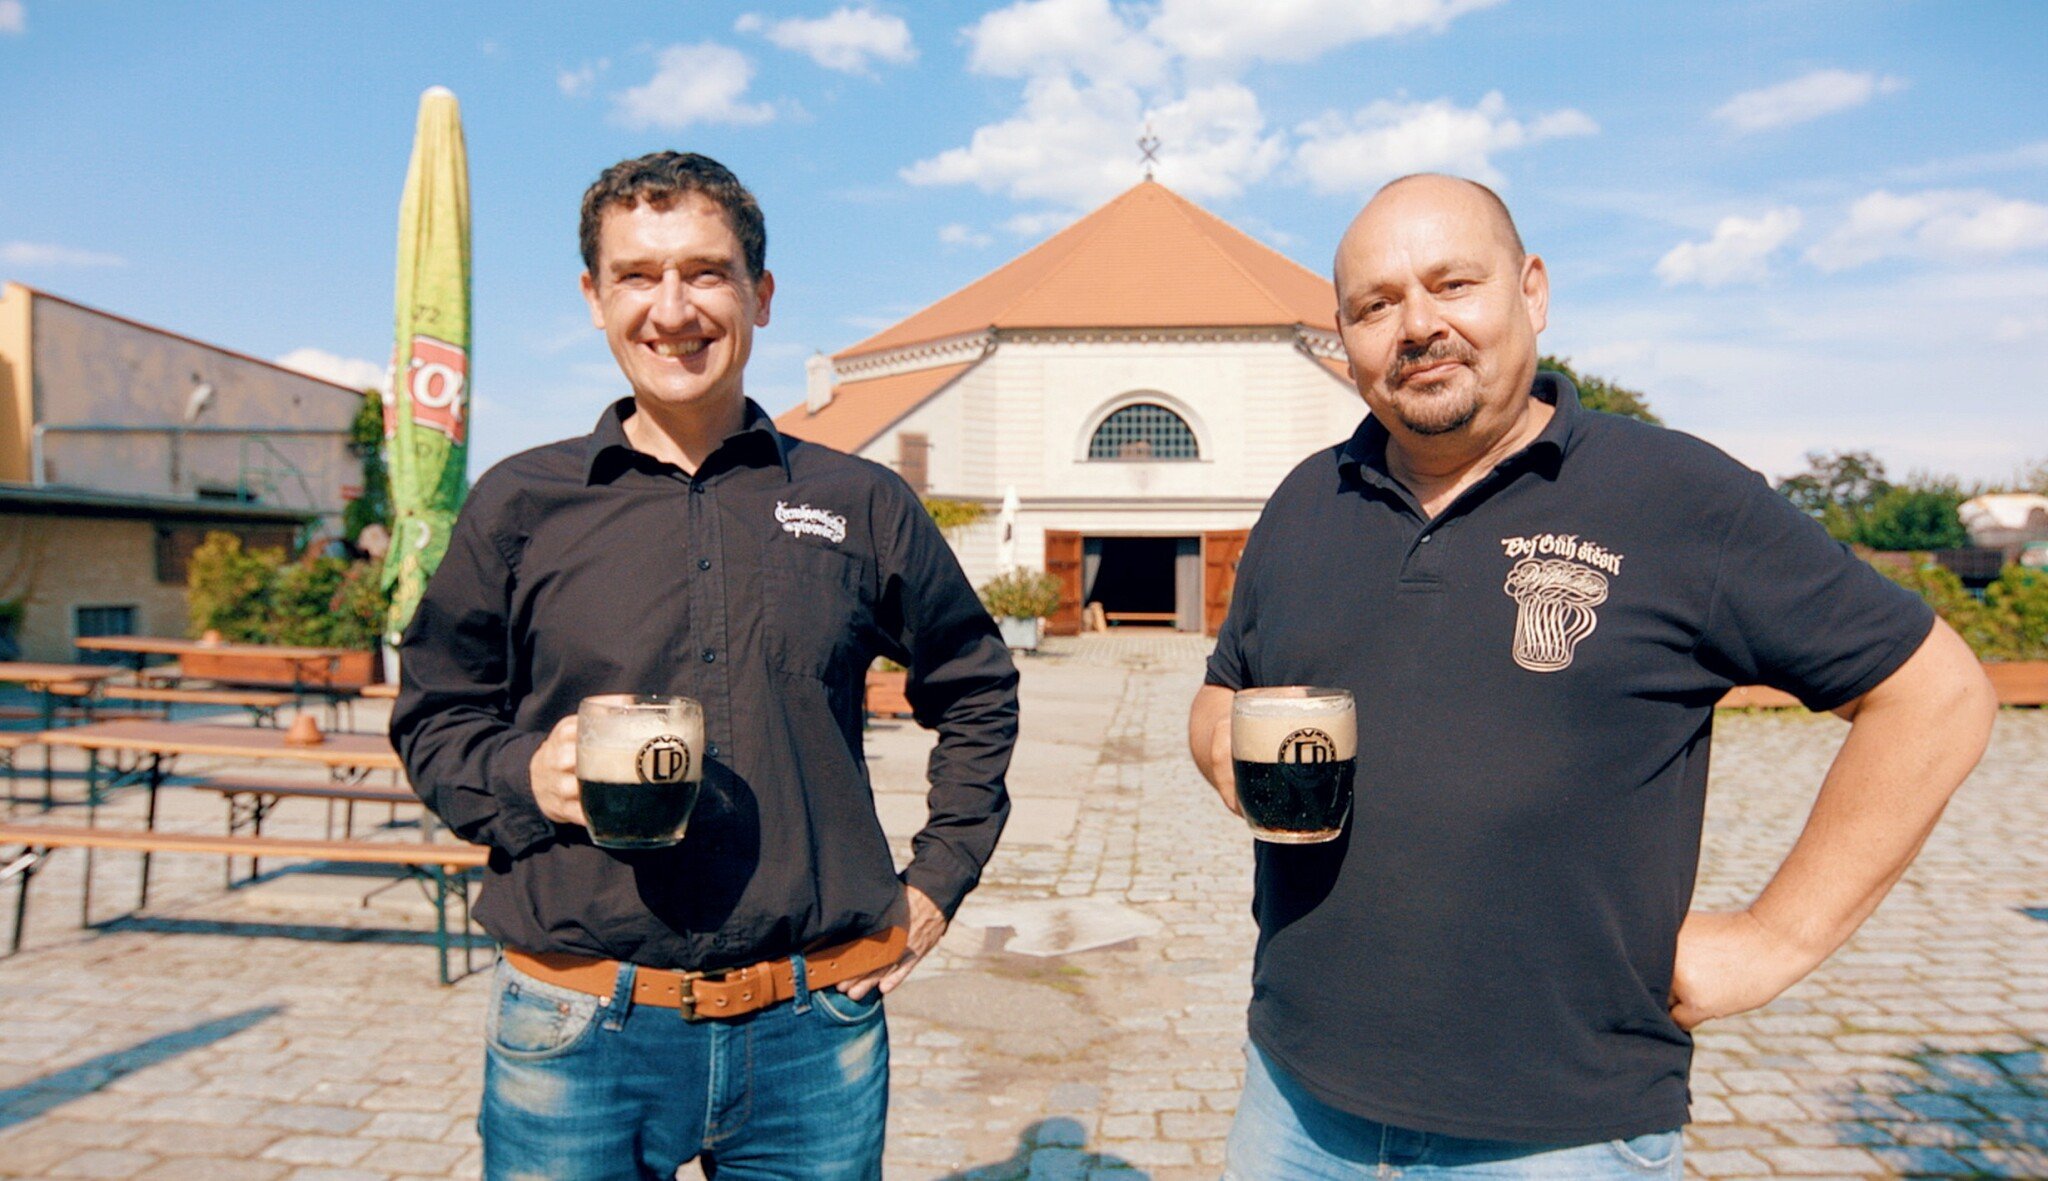 Podivní nadšenci, psalo se o nich kdysi. Dnes dva kamarádi provozují nejkrásnější pivovarské muzeum v Česku